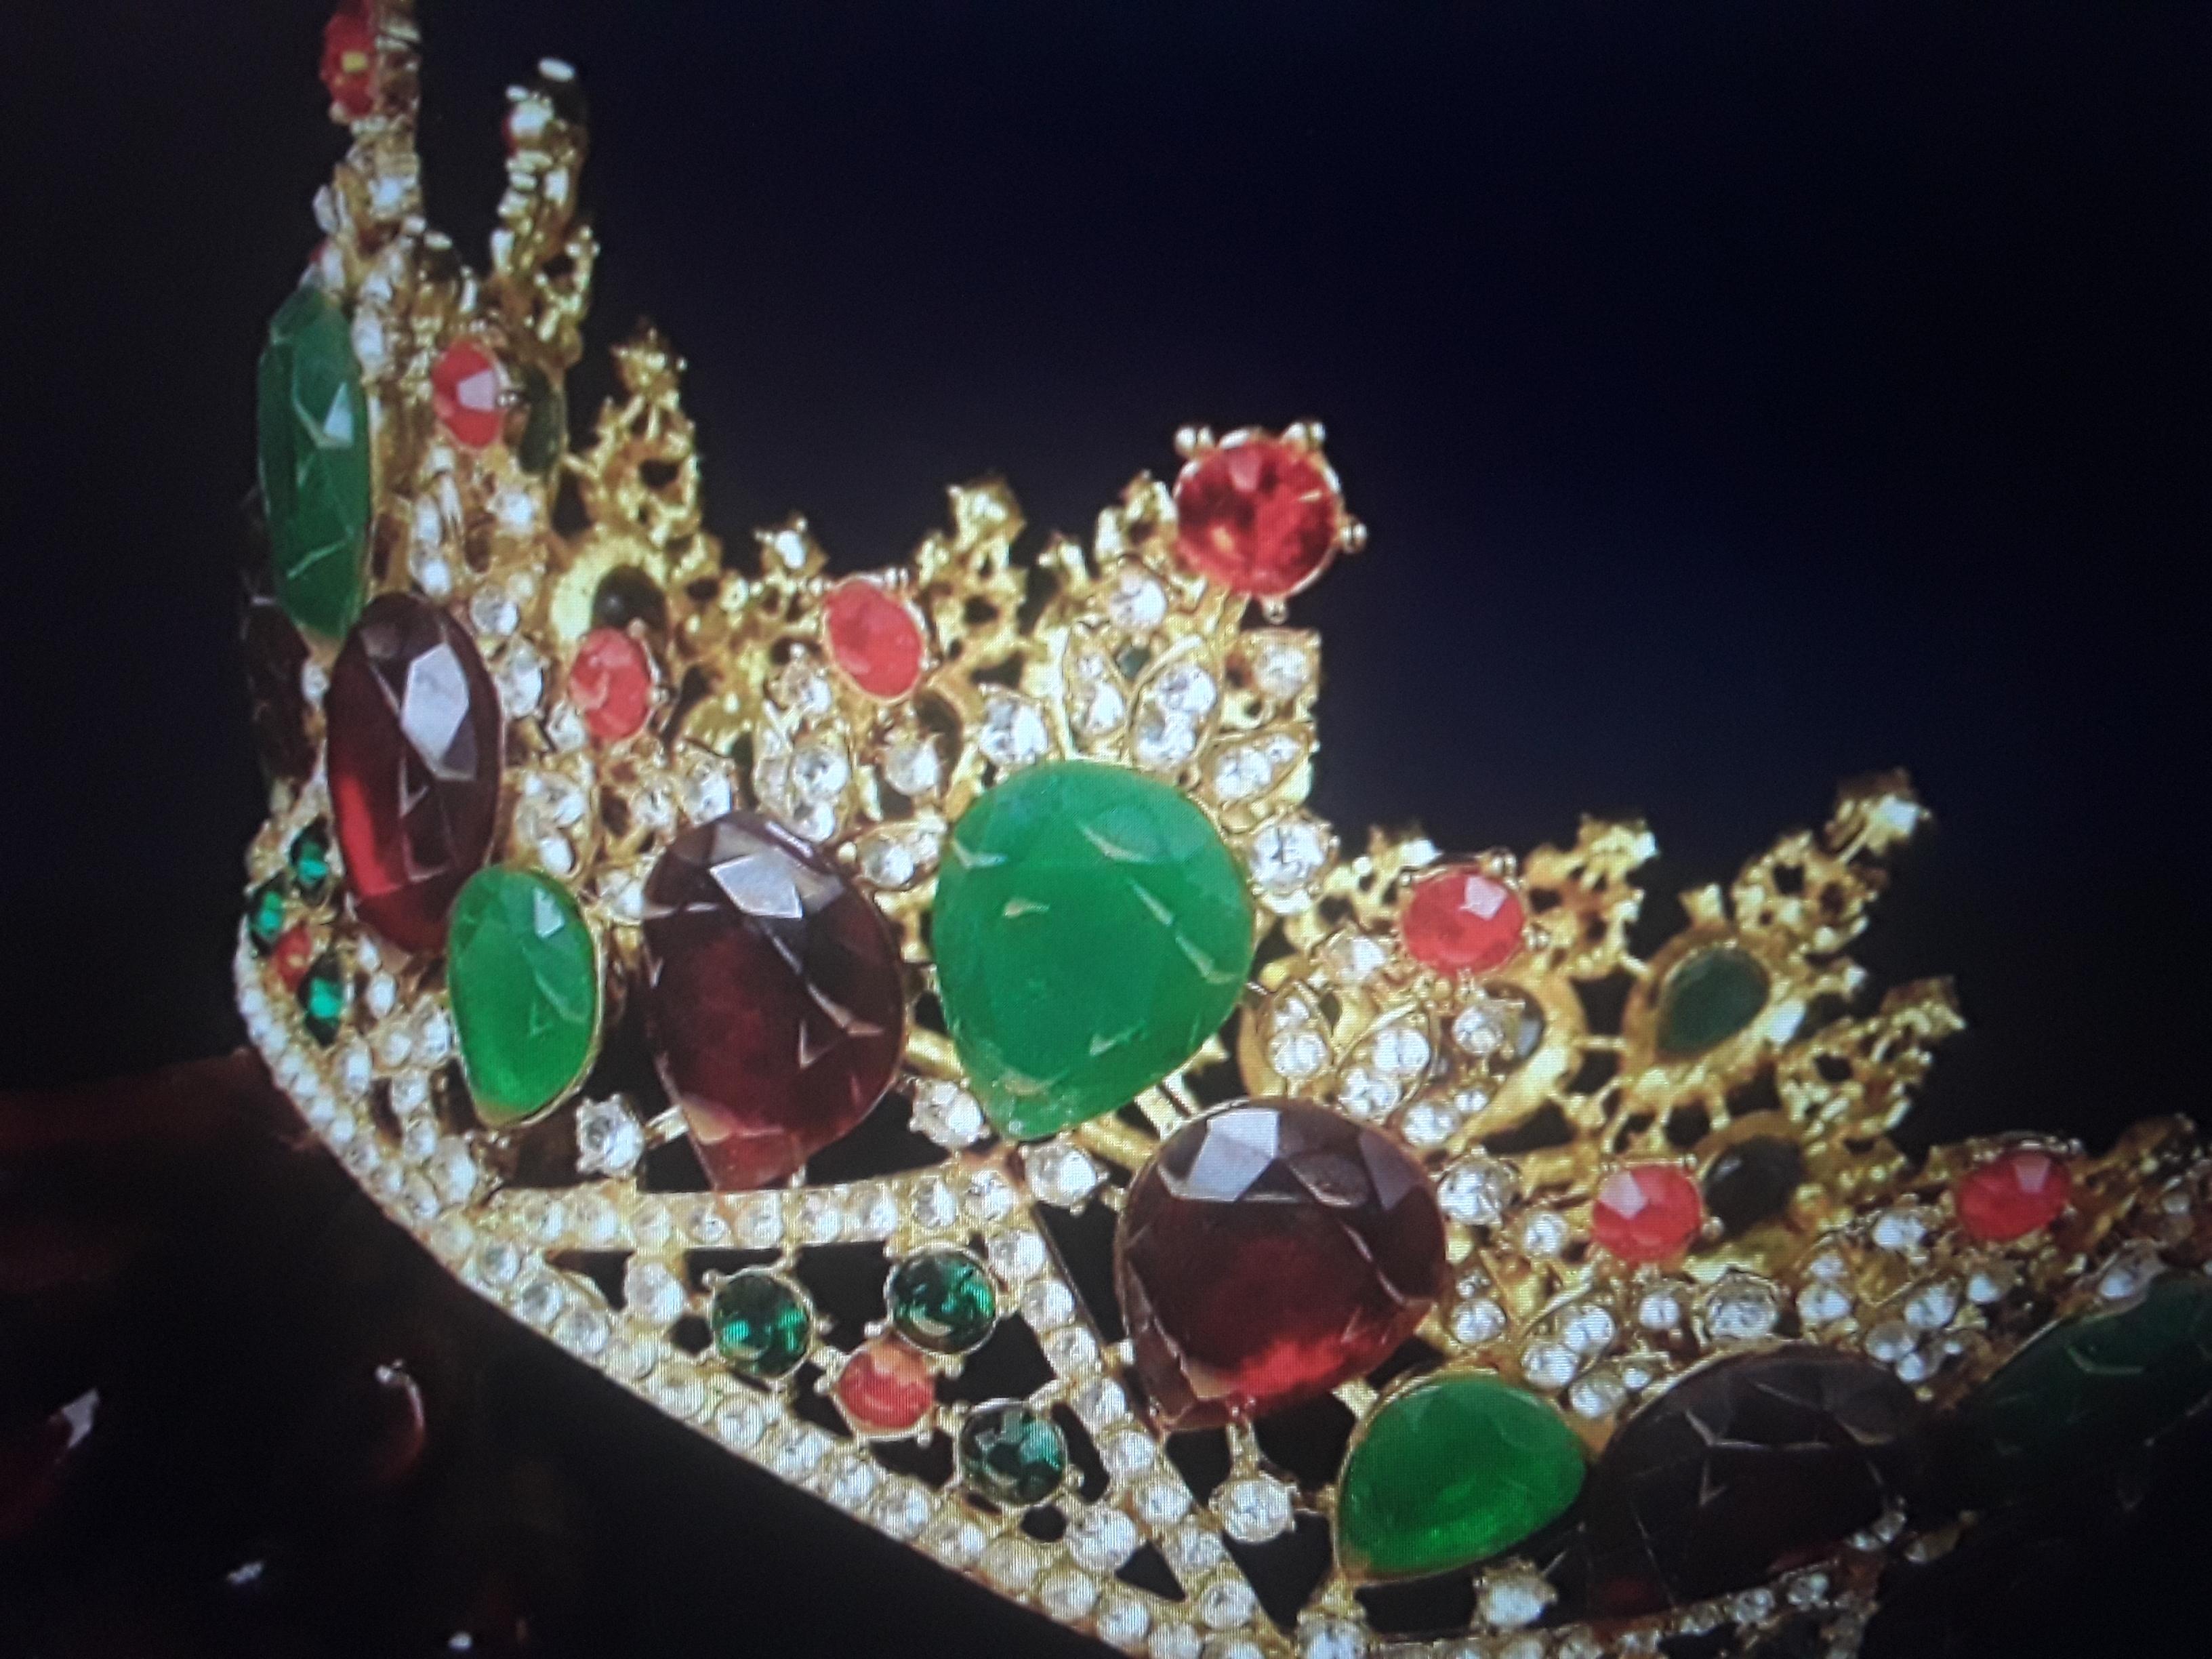 Tiara royale ancienne en bronze doré rouge avec bijoux verts - Pièce de collection/ Grande-Bretagne 1